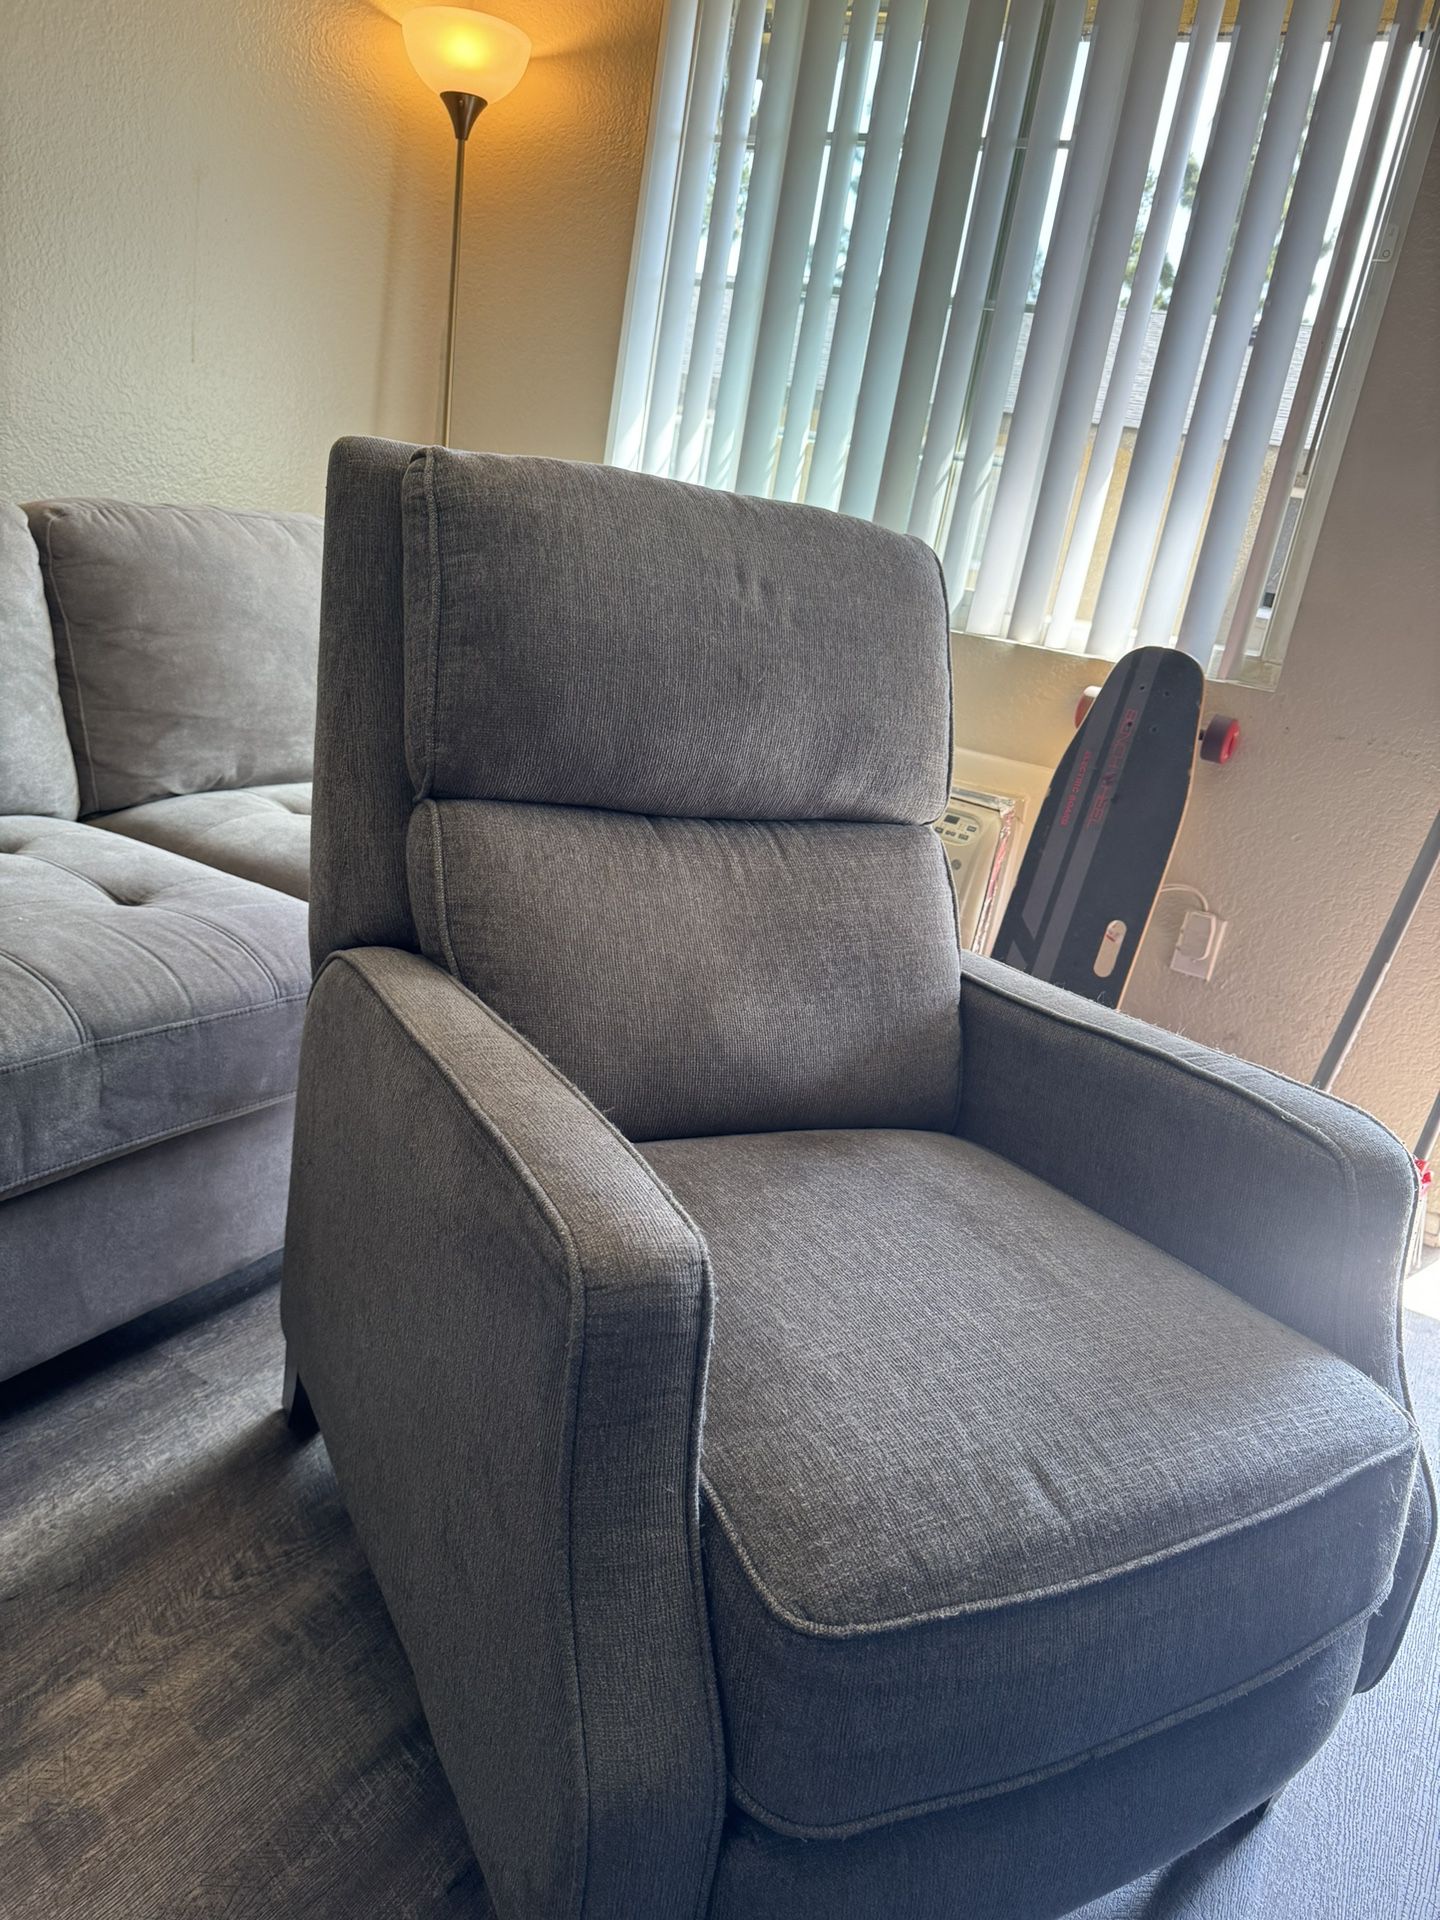 Recliner Sofa Chair